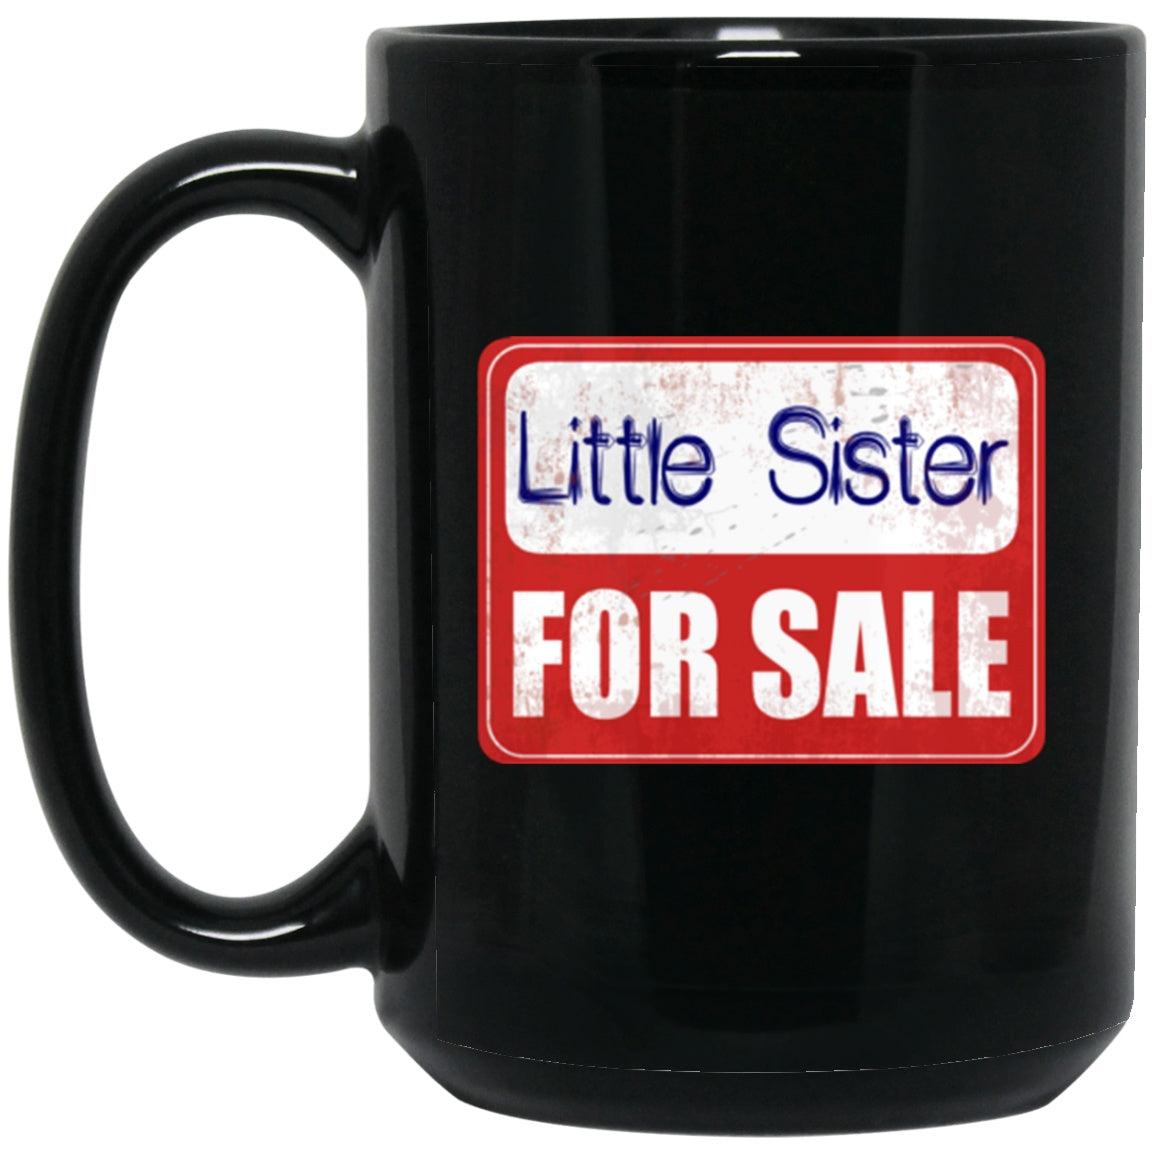 Little Sister Funny Mug For Sale Black Coffee Mugs - GoneBold.gift